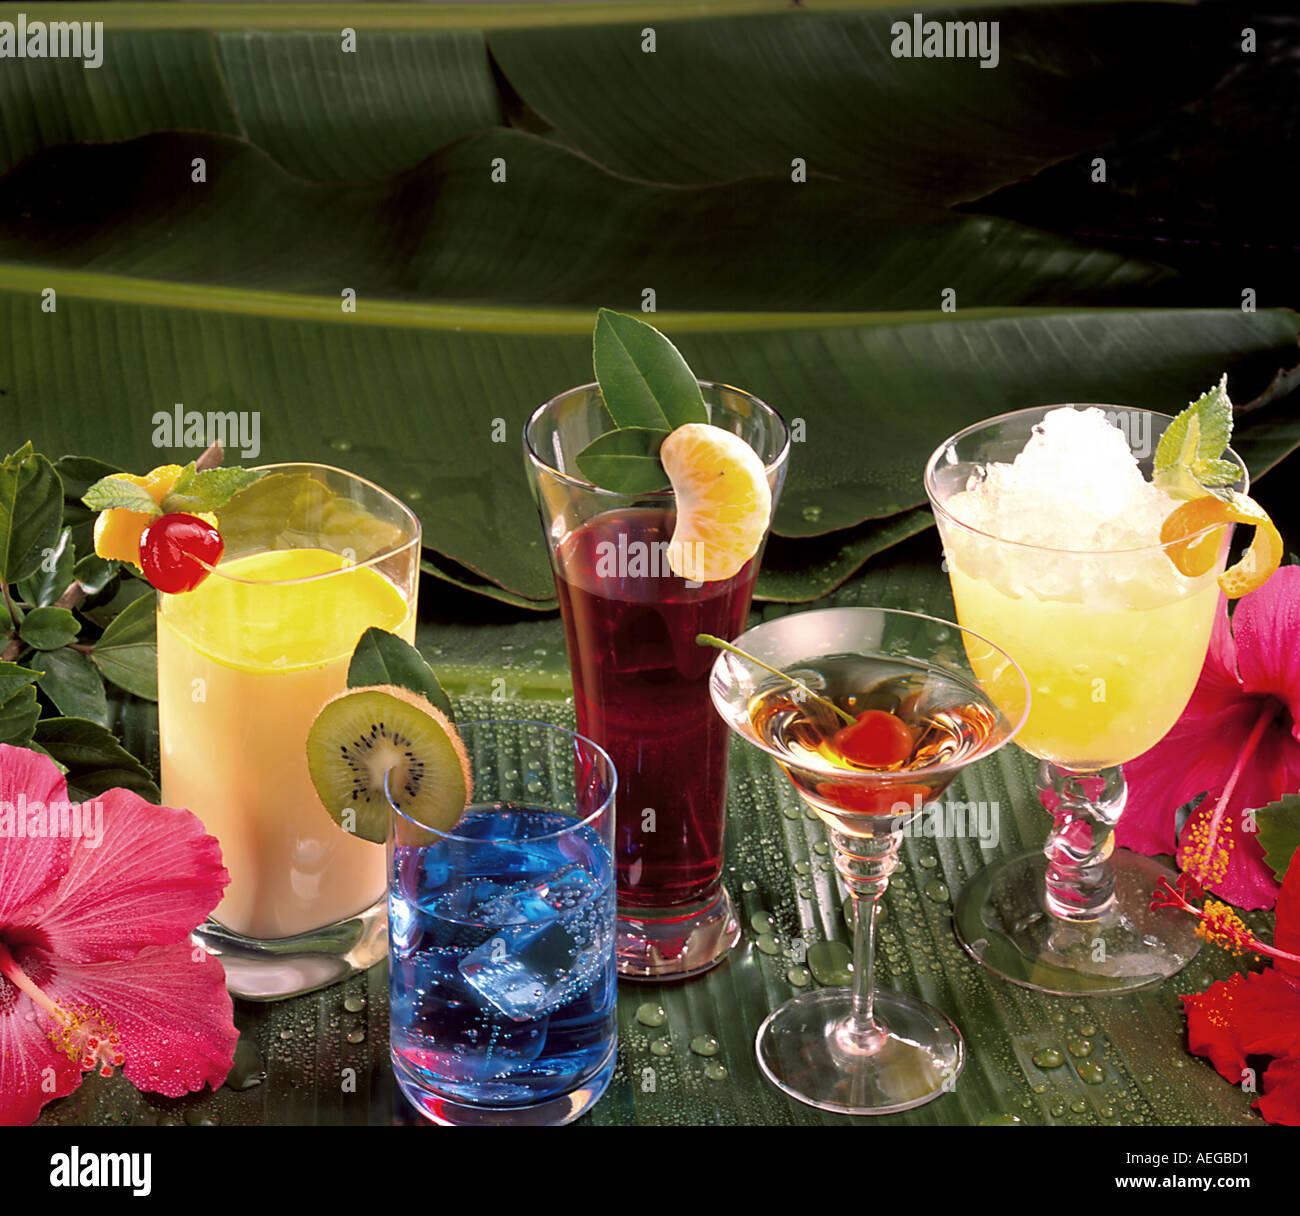 Essen Glas Gläser Getränke Frucht-Cocktail Cocktails garnieren Martini  trinken Getränke alkoholische Alkohol Geist Geister tropischen  Stockfotografie - Alamy